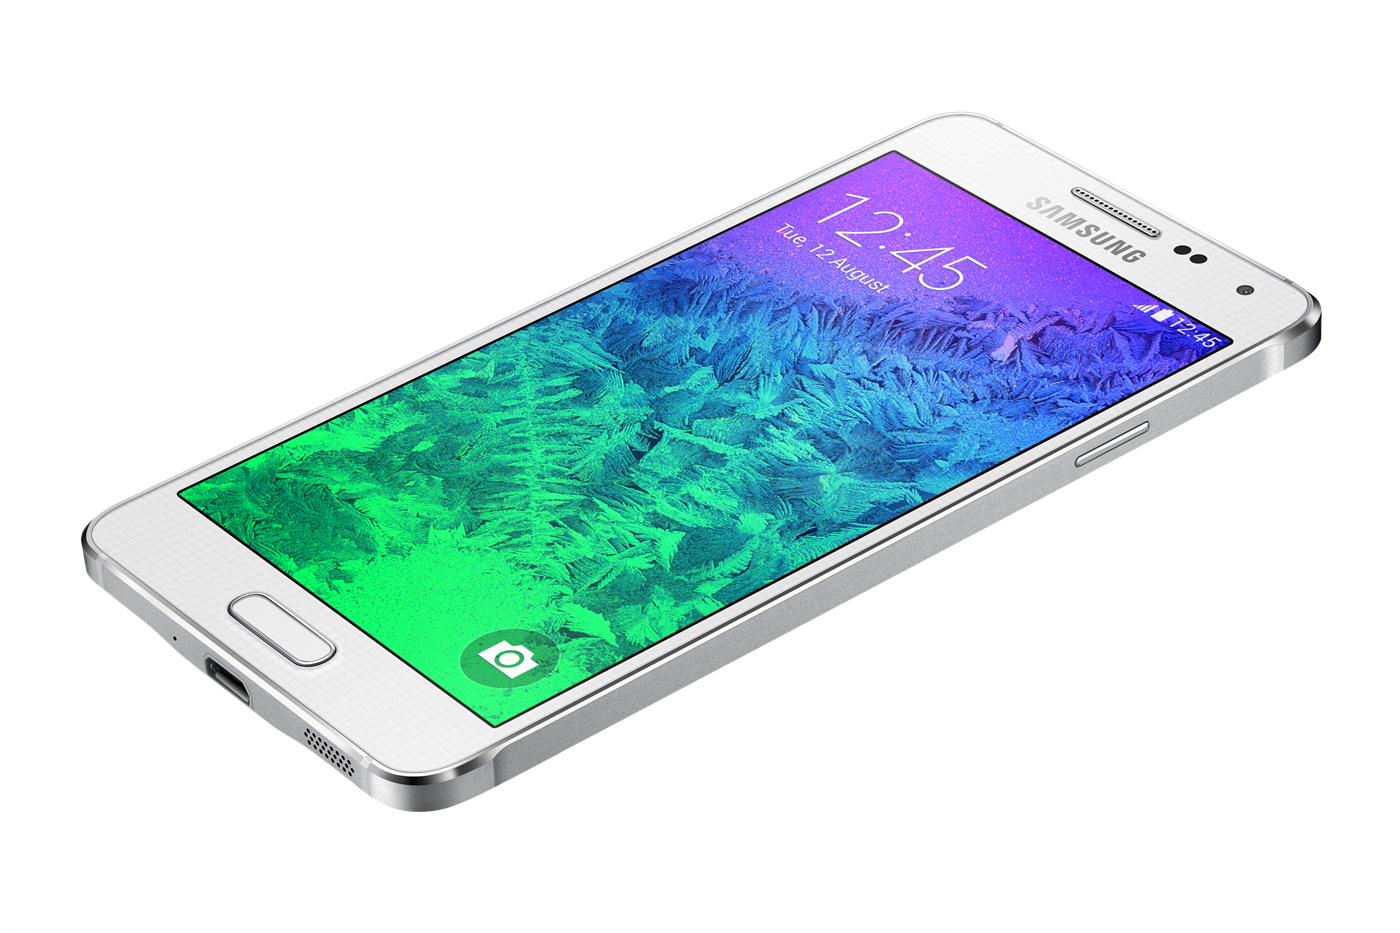 Samsung Sm A115f Galaxy A11